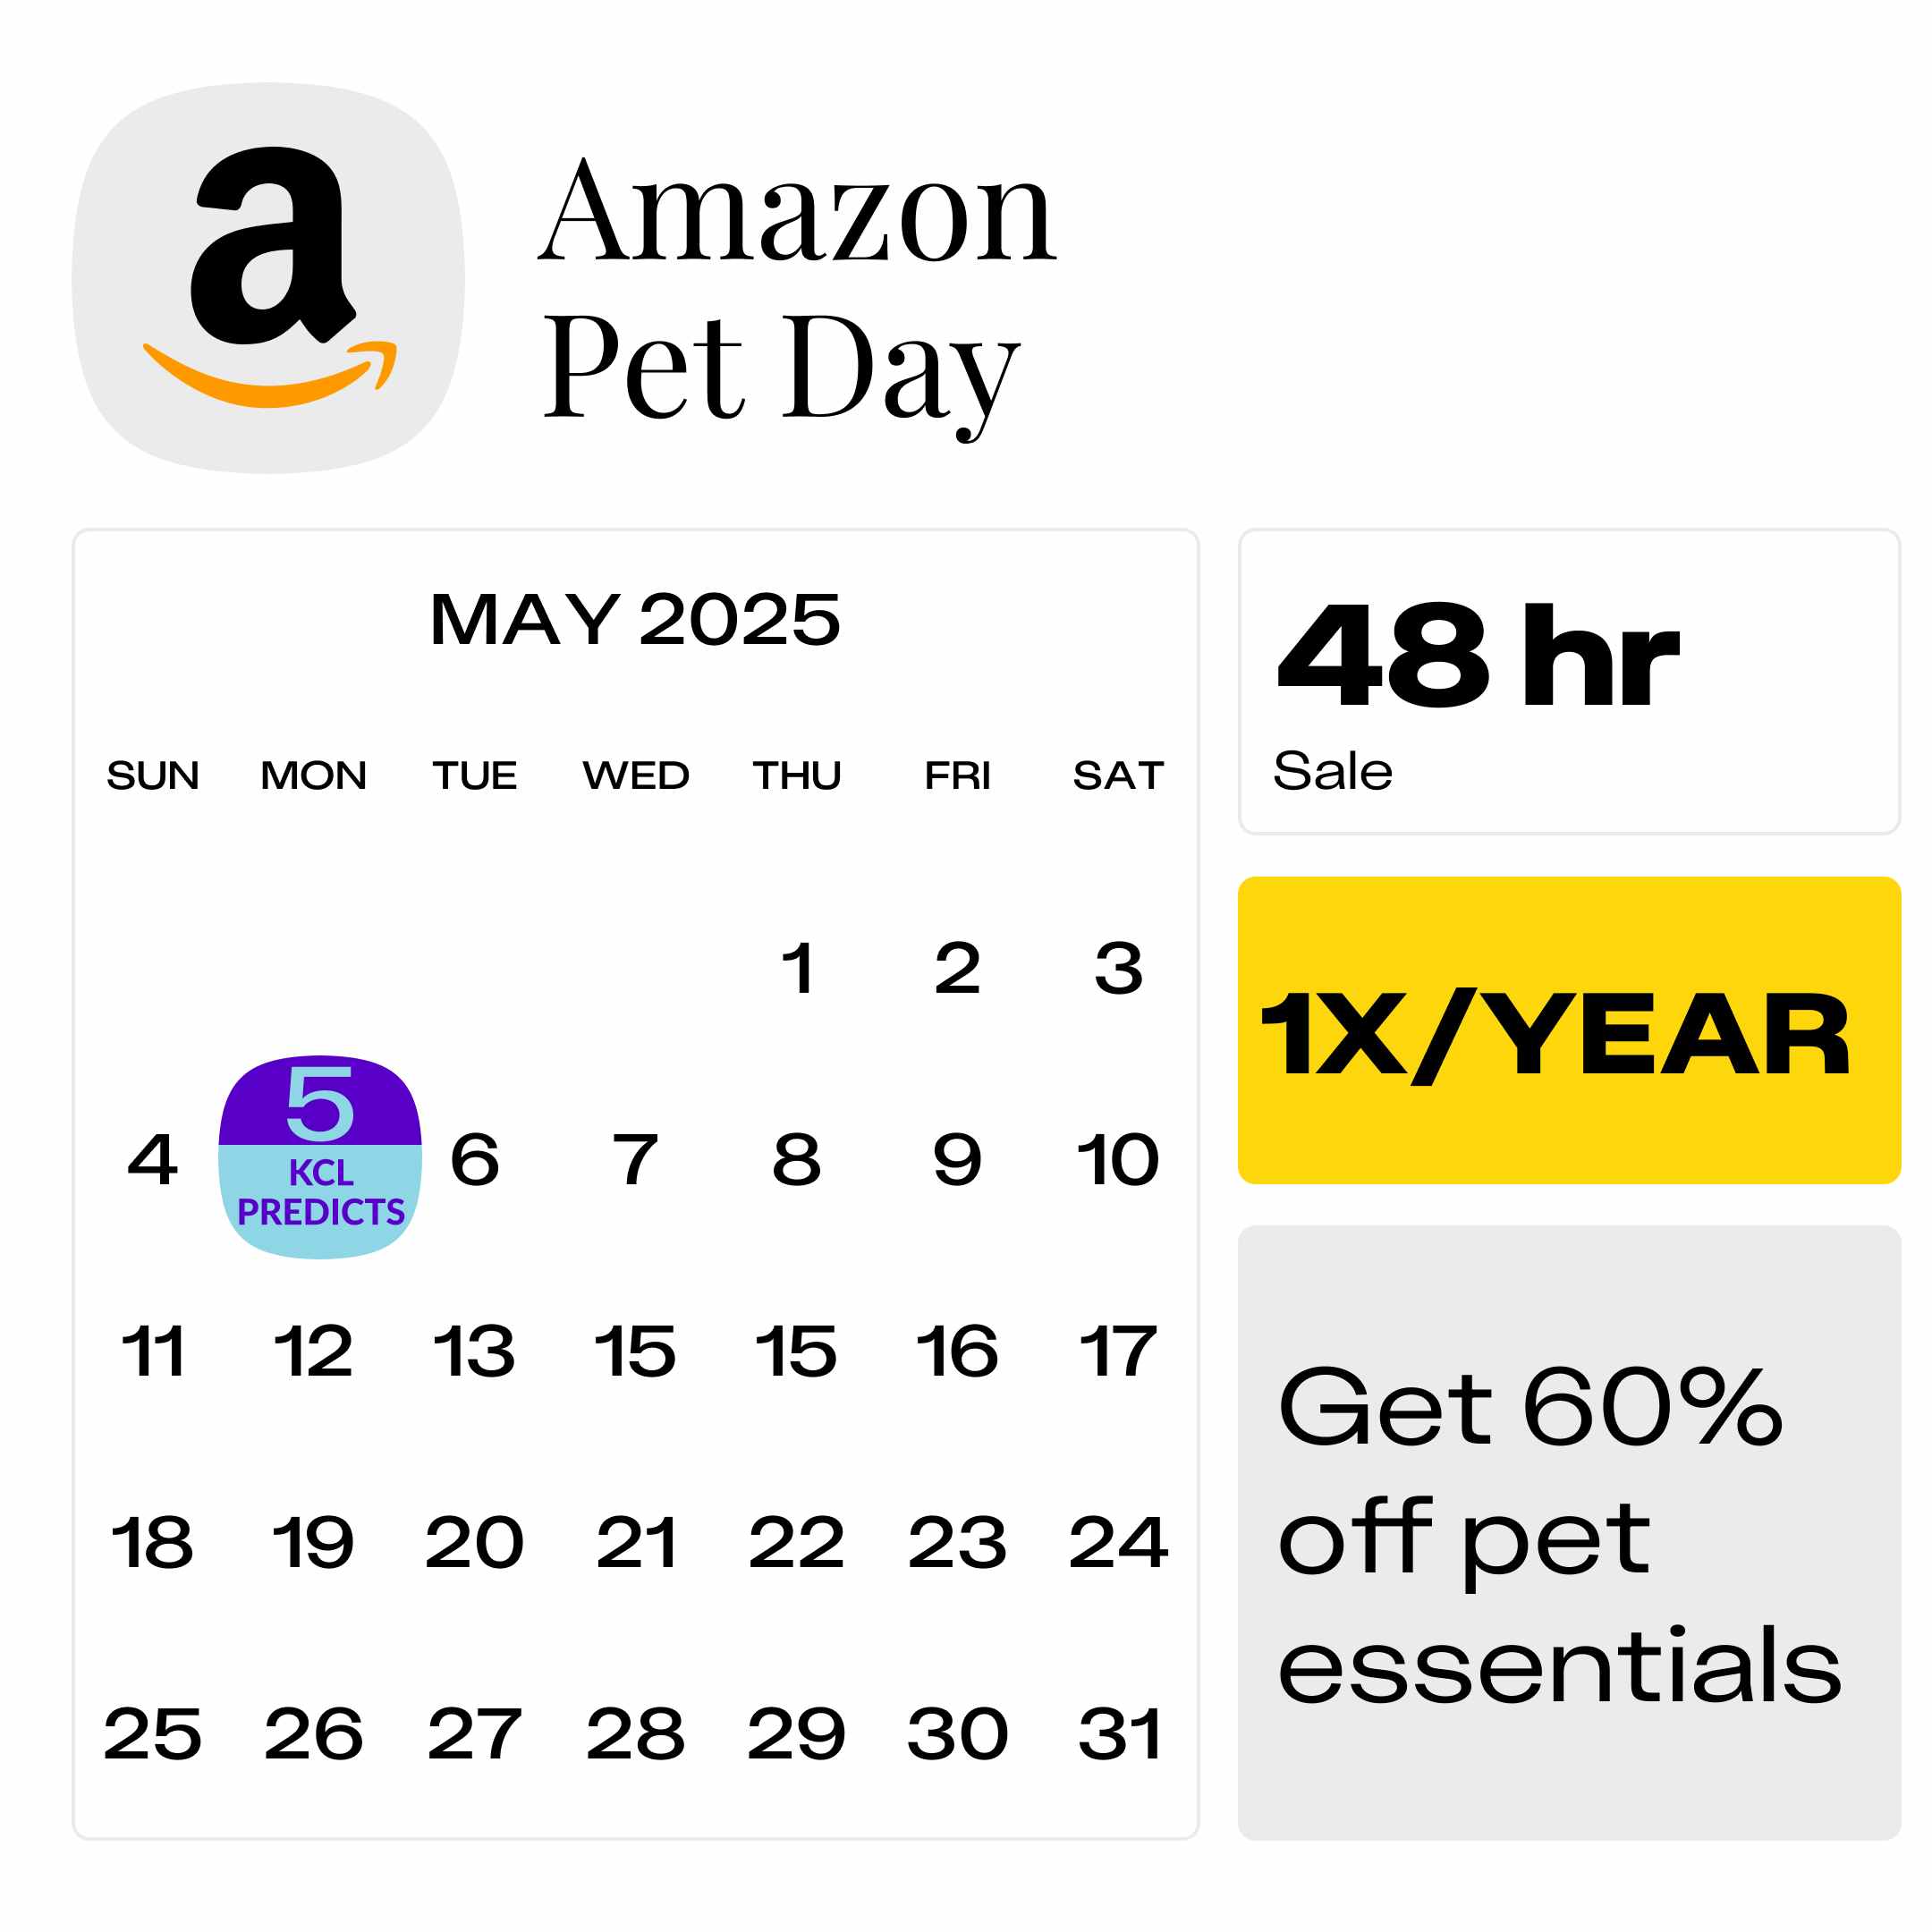 Amazon-Pet-Day-2025-predicted